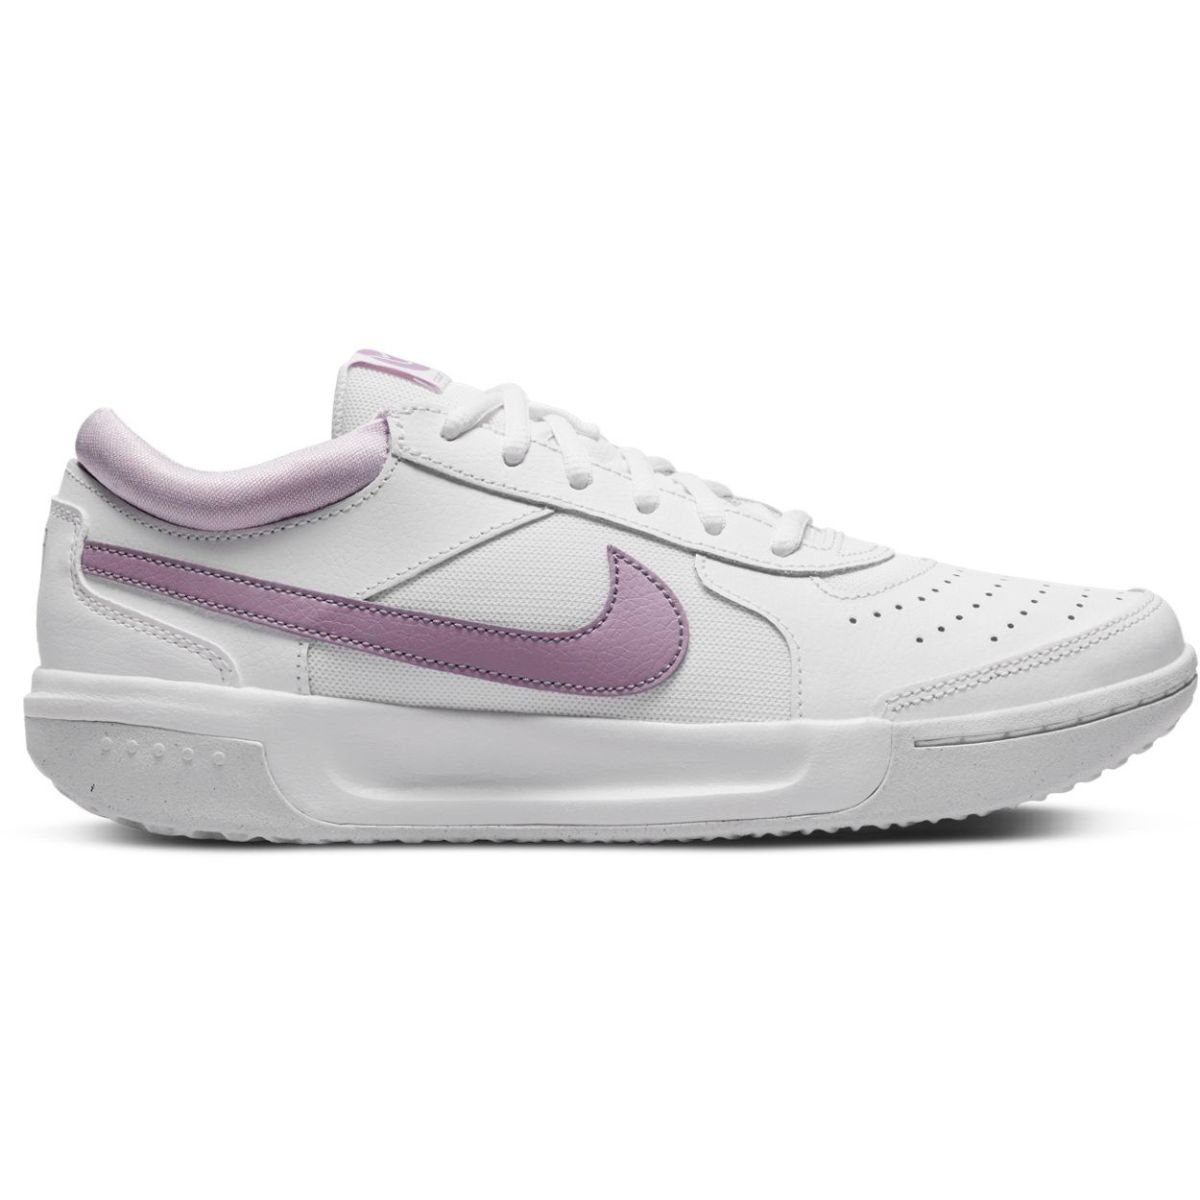 NikeCourt 3 Women's Tennis Shoes